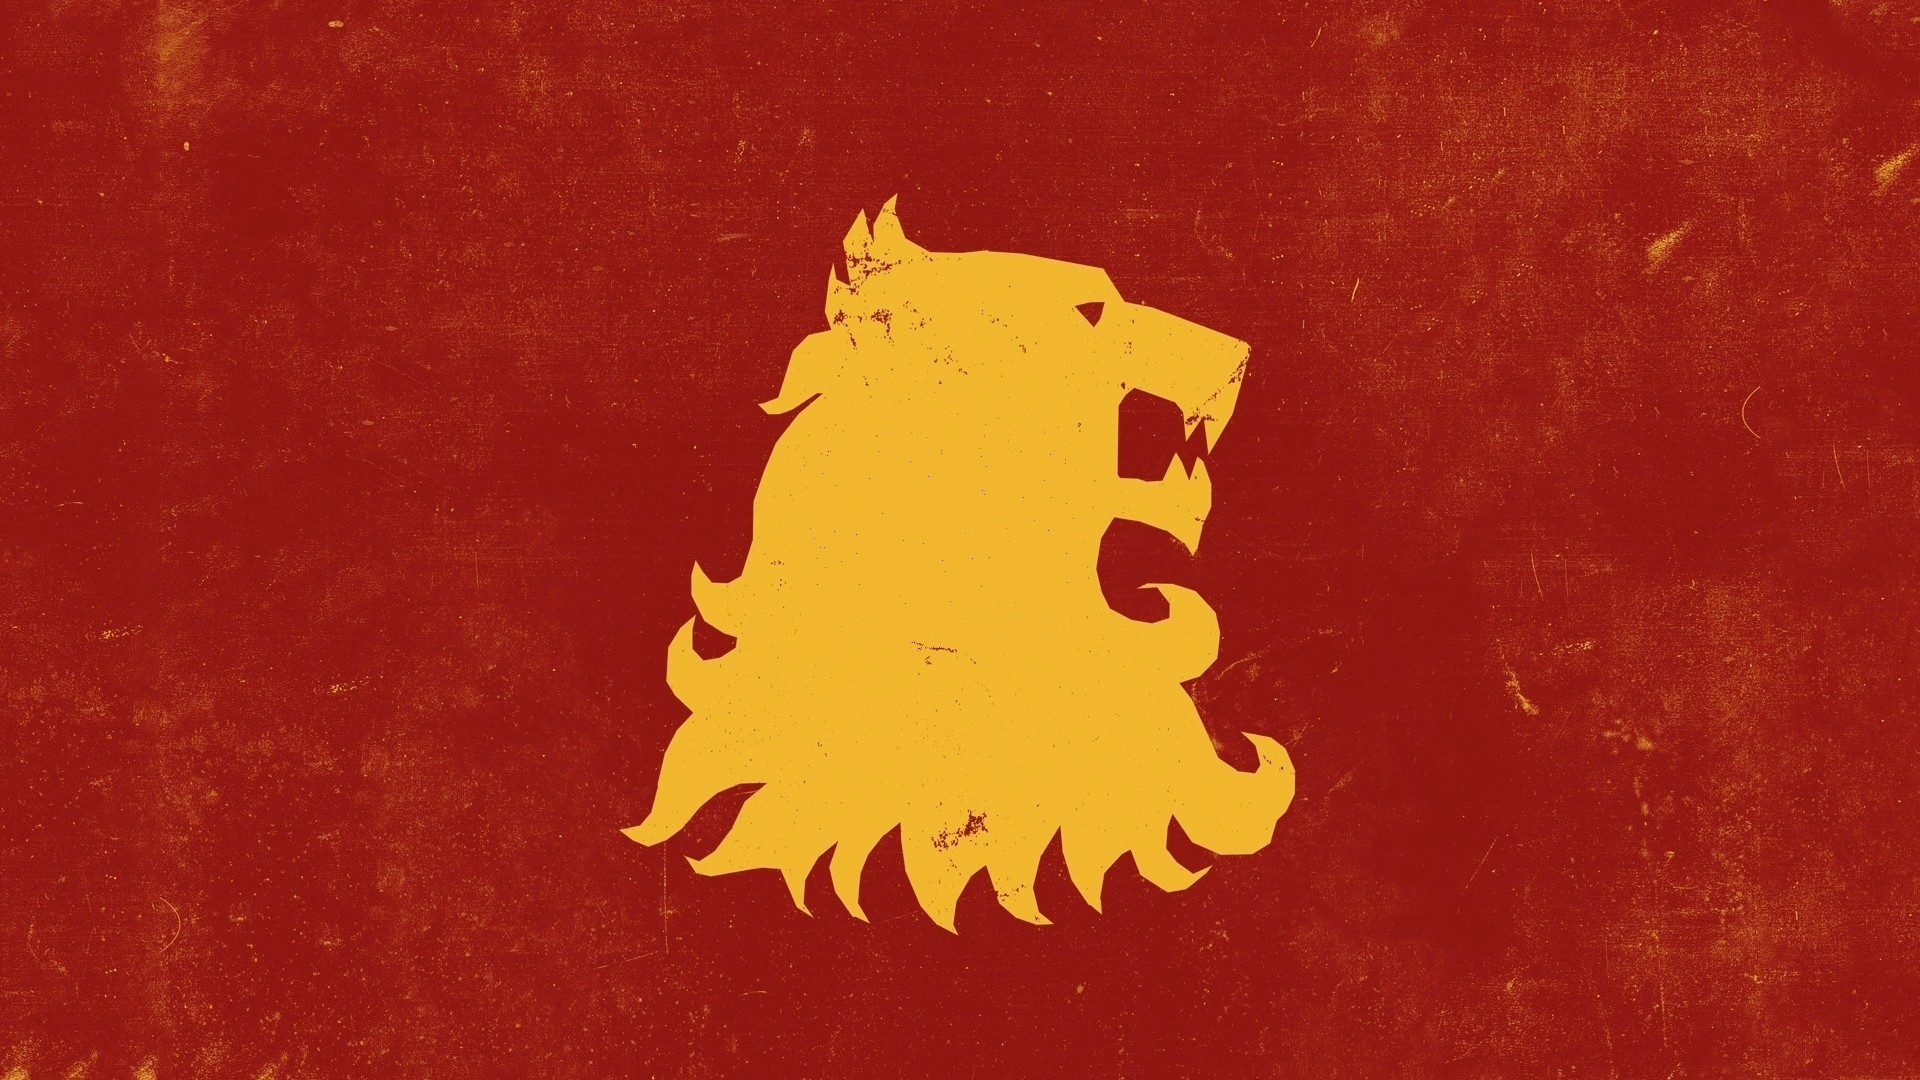 General lion animals Game of Thrones House Targaryen sigils